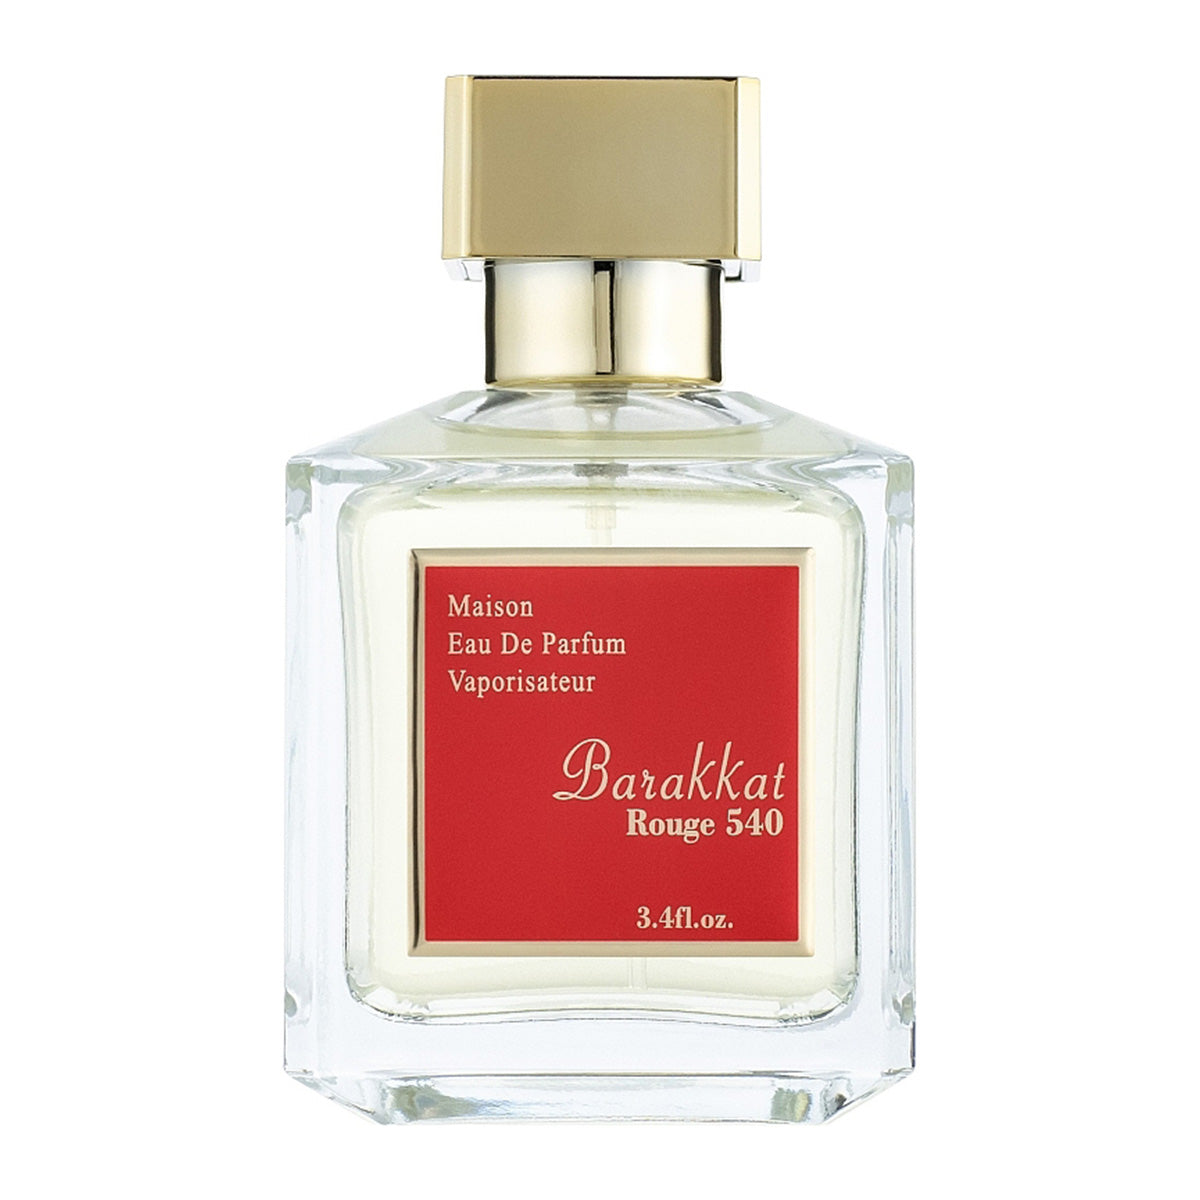 Barakkat Rouge 540 Maison Eau de Parfum 100ml Fragrance World | Smile Europe Wholesale